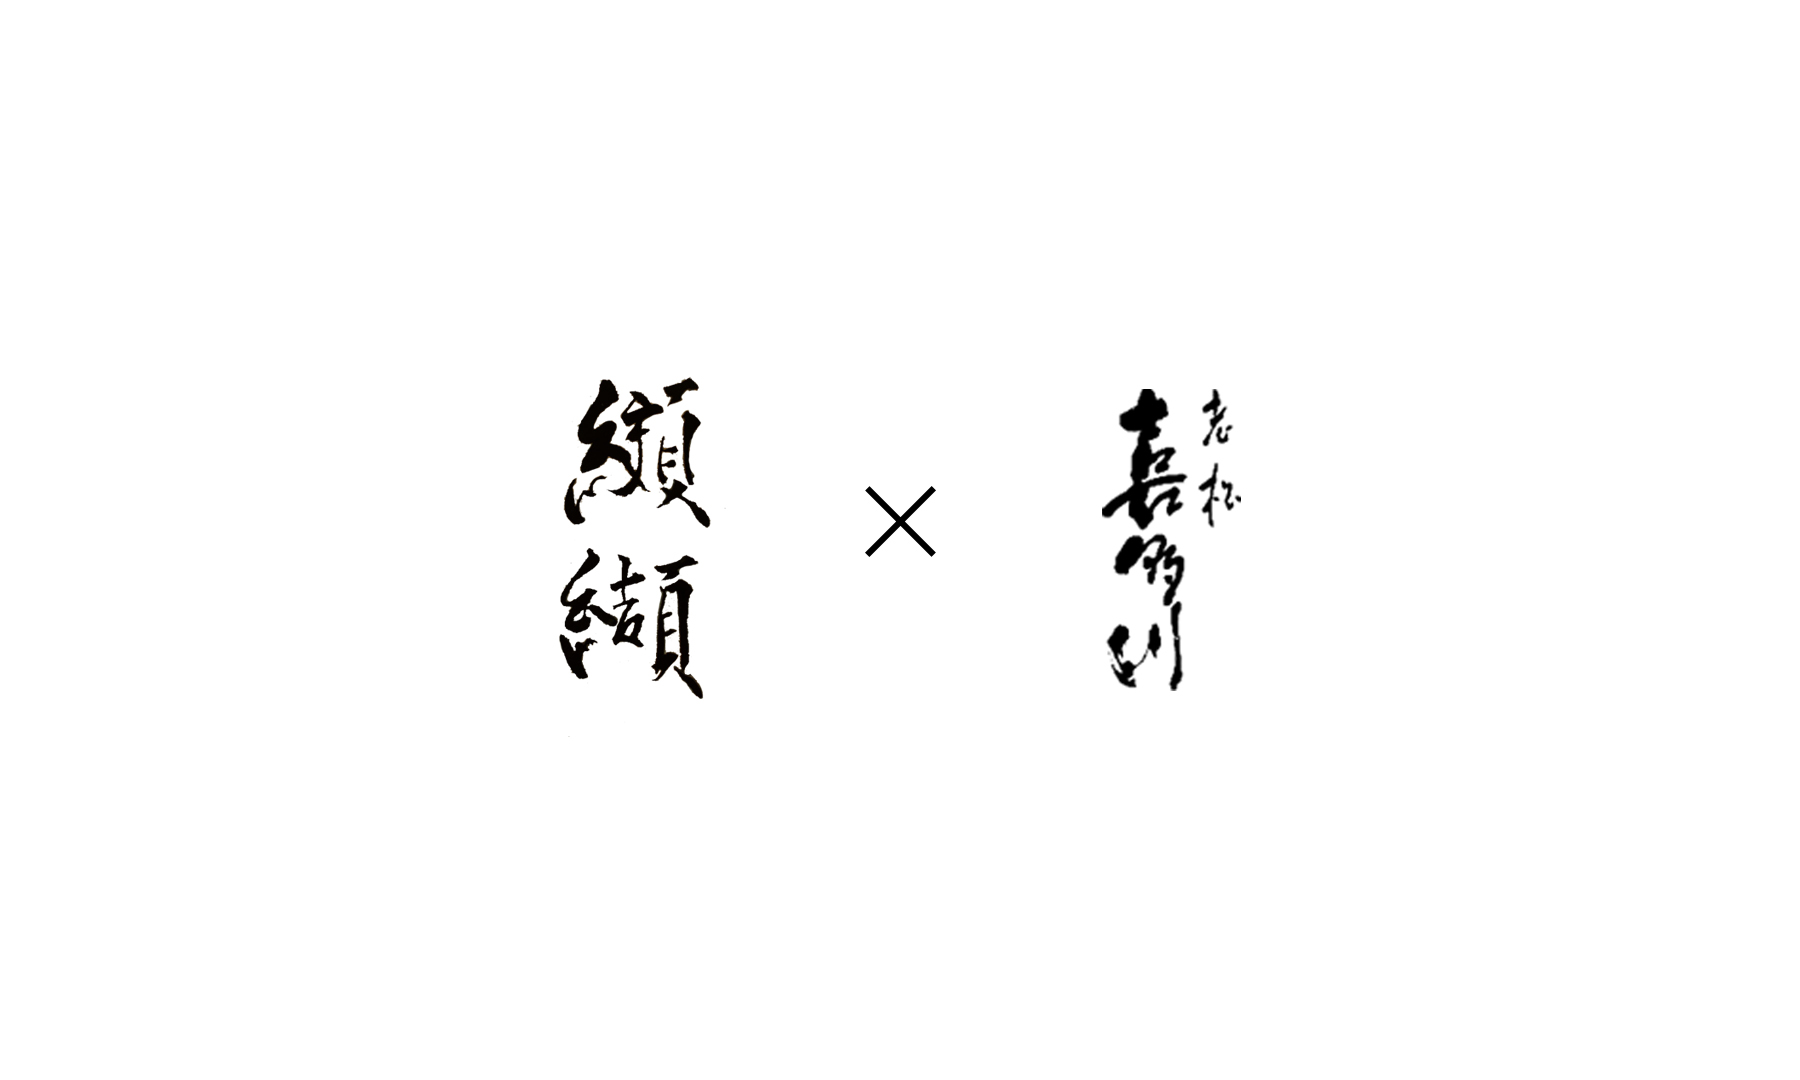 Kouketsu × Oimatsu kitagawa (Takeaway)'s image